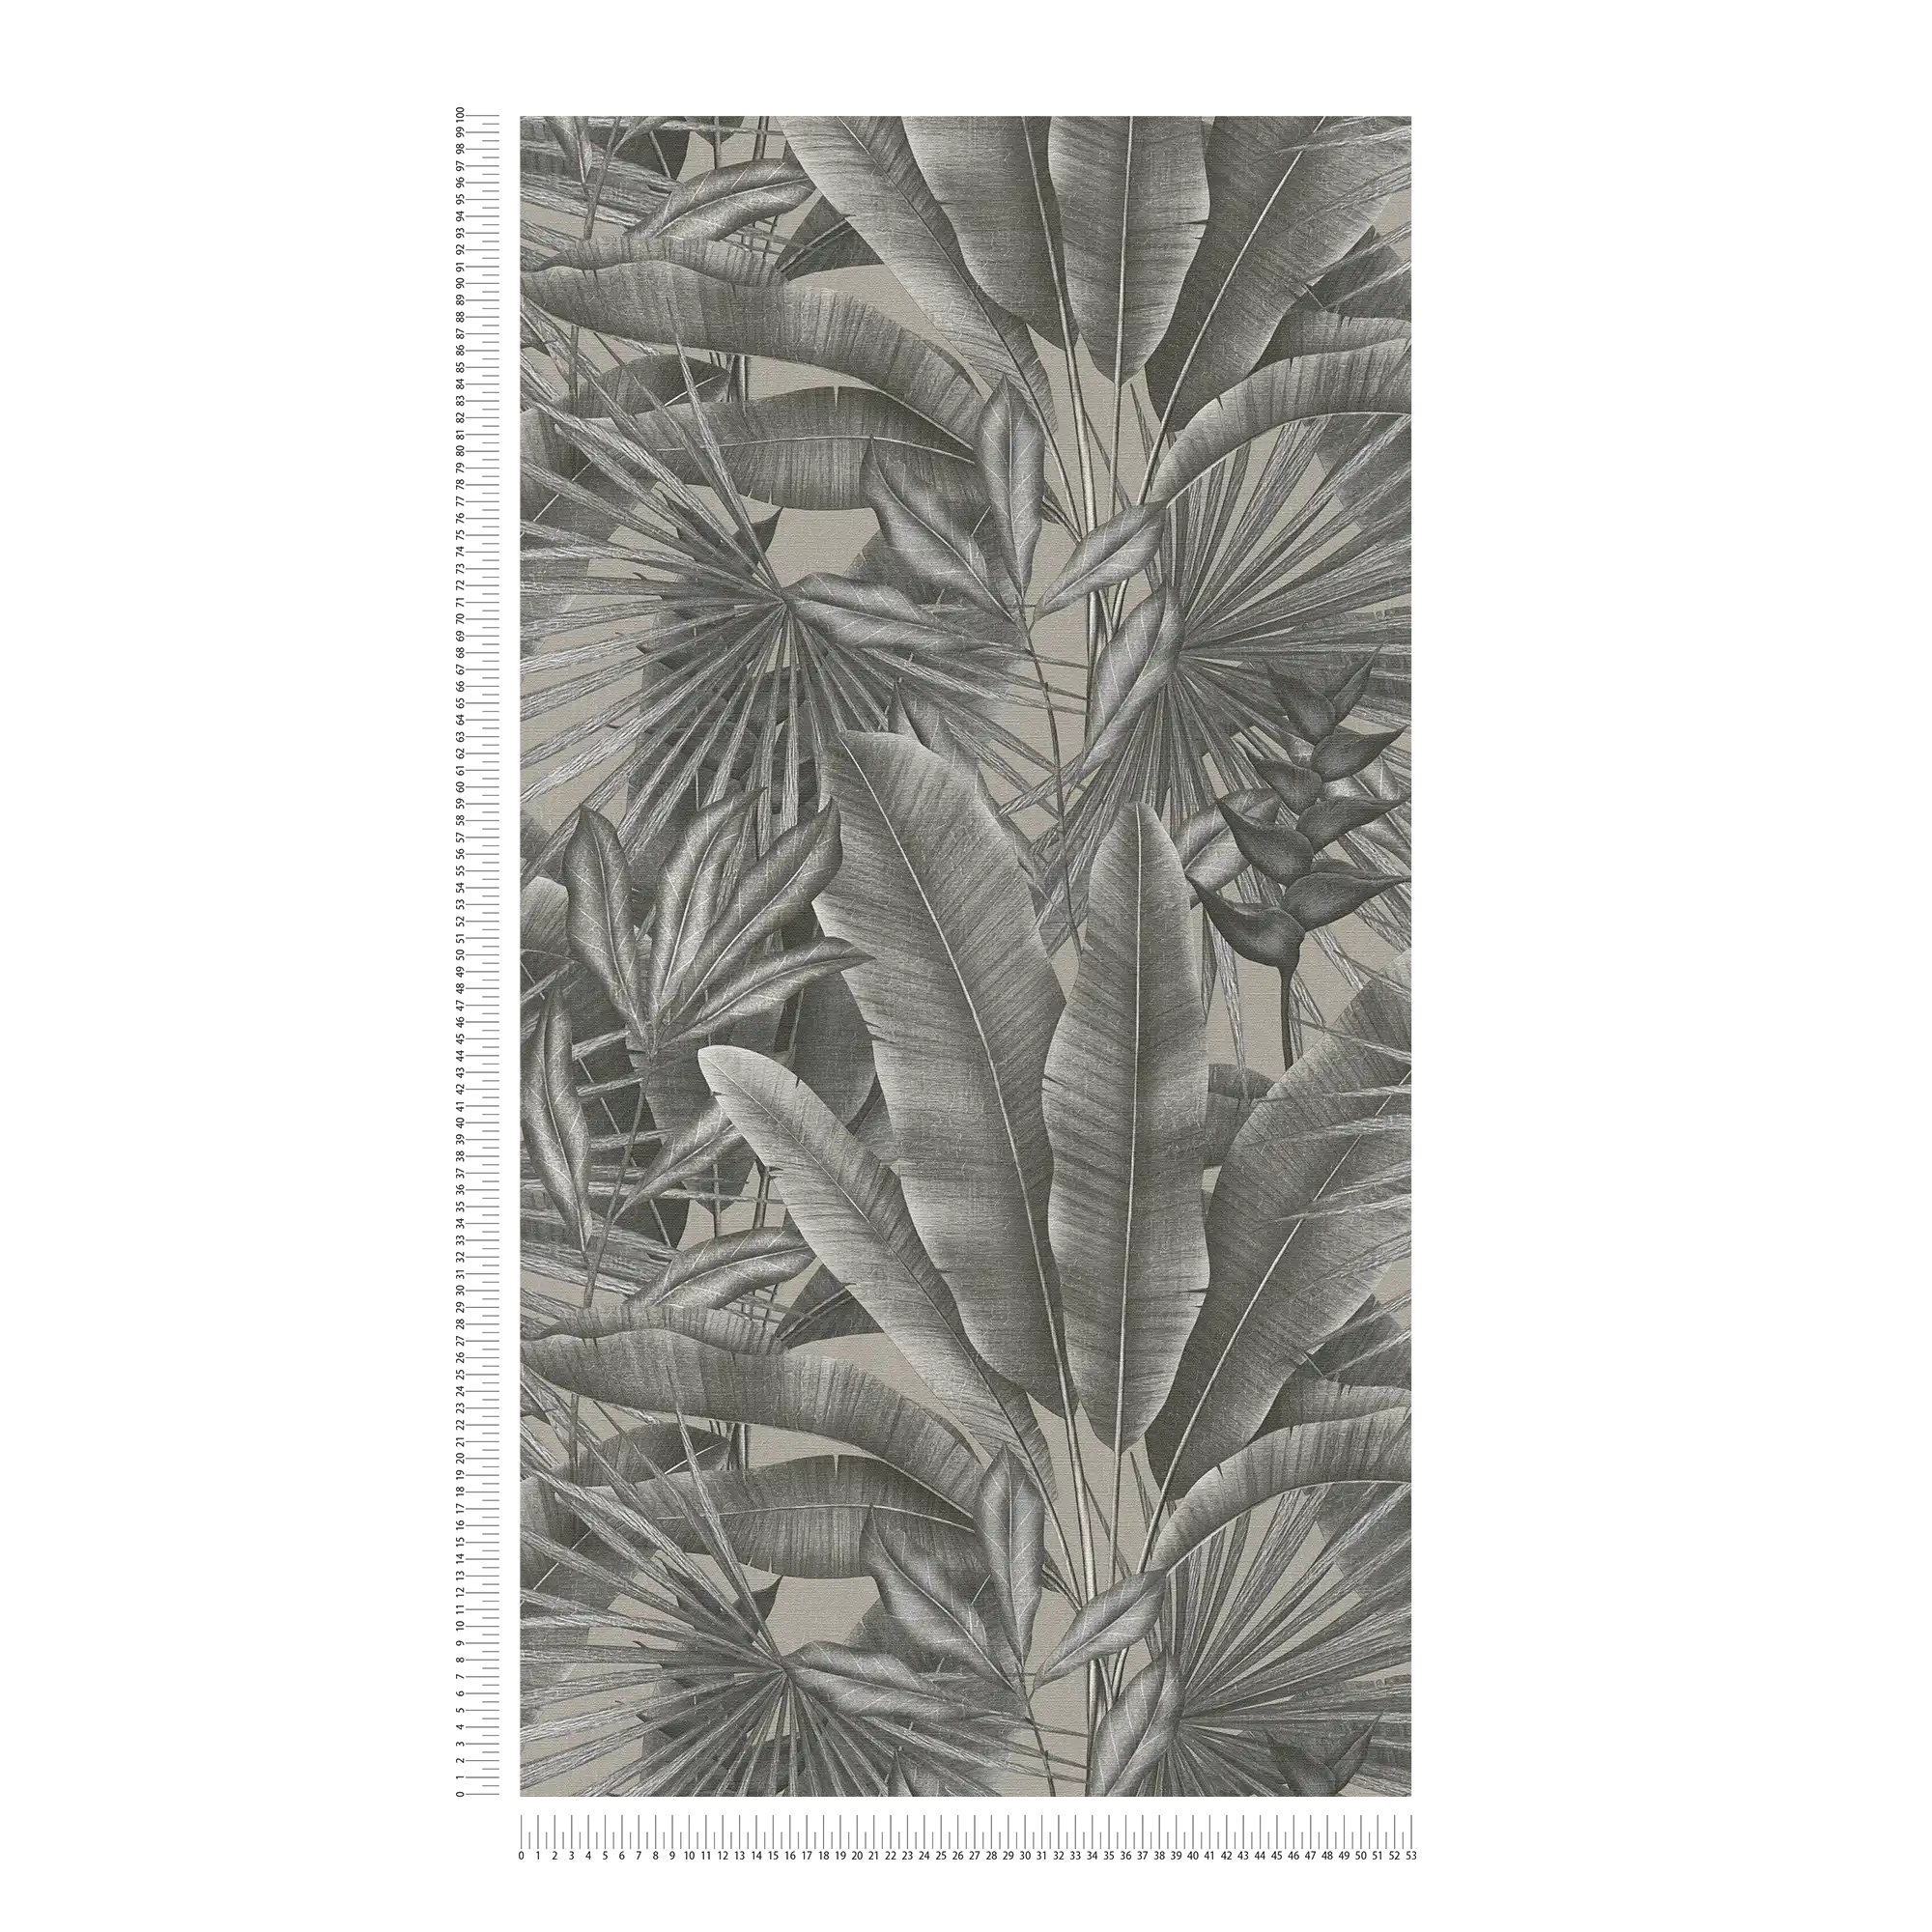             Papel pintado no tejido con motivo de hojas en diseño selvático - gris, beige, negro
        